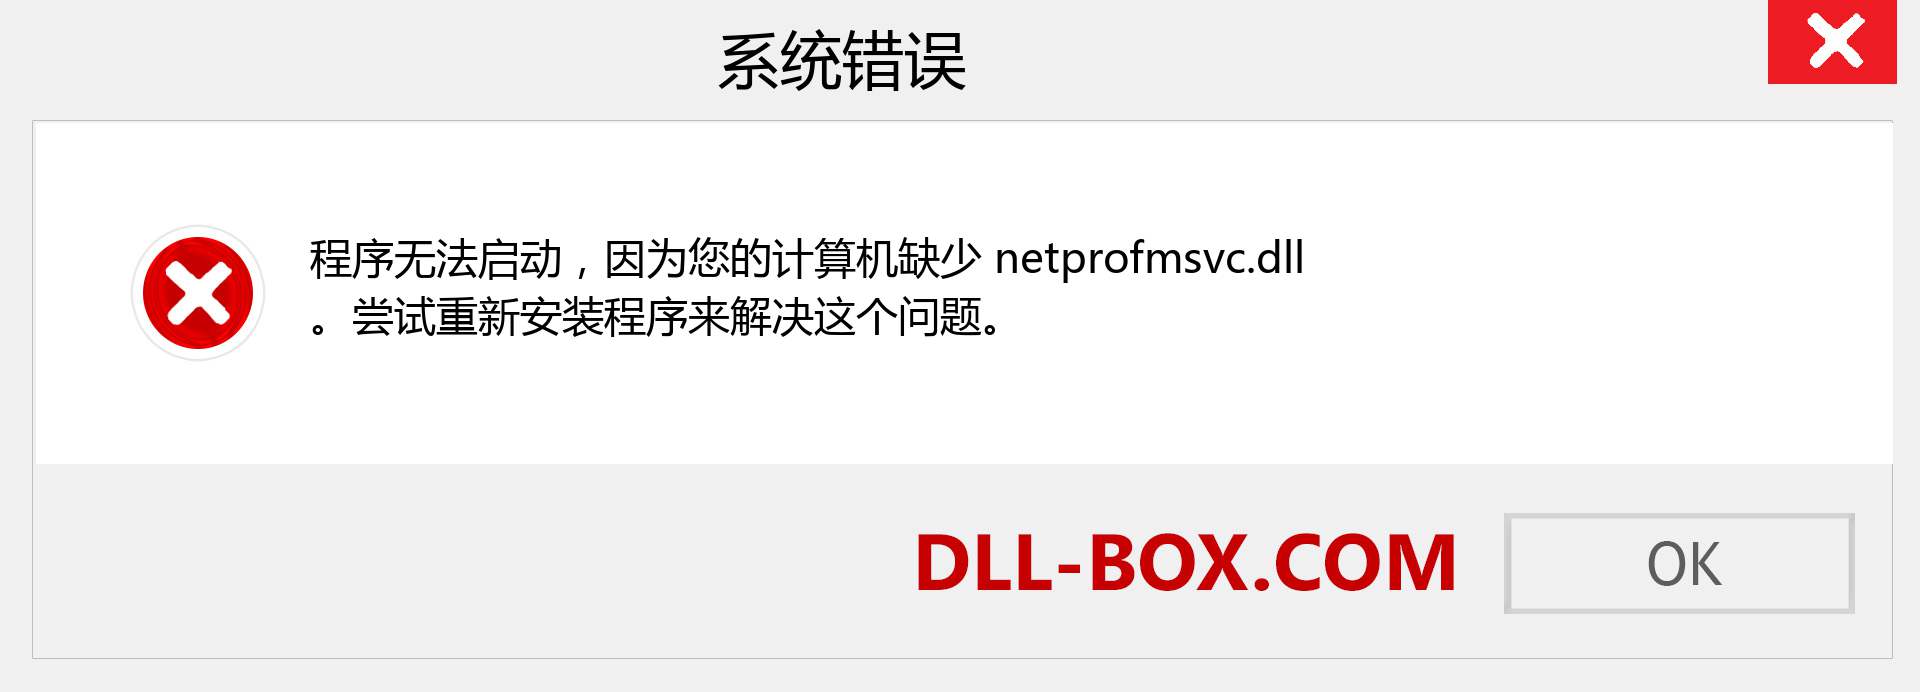 netprofmsvc.dll 文件丢失？。 适用于 Windows 7、8、10 的下载 - 修复 Windows、照片、图像上的 netprofmsvc dll 丢失错误